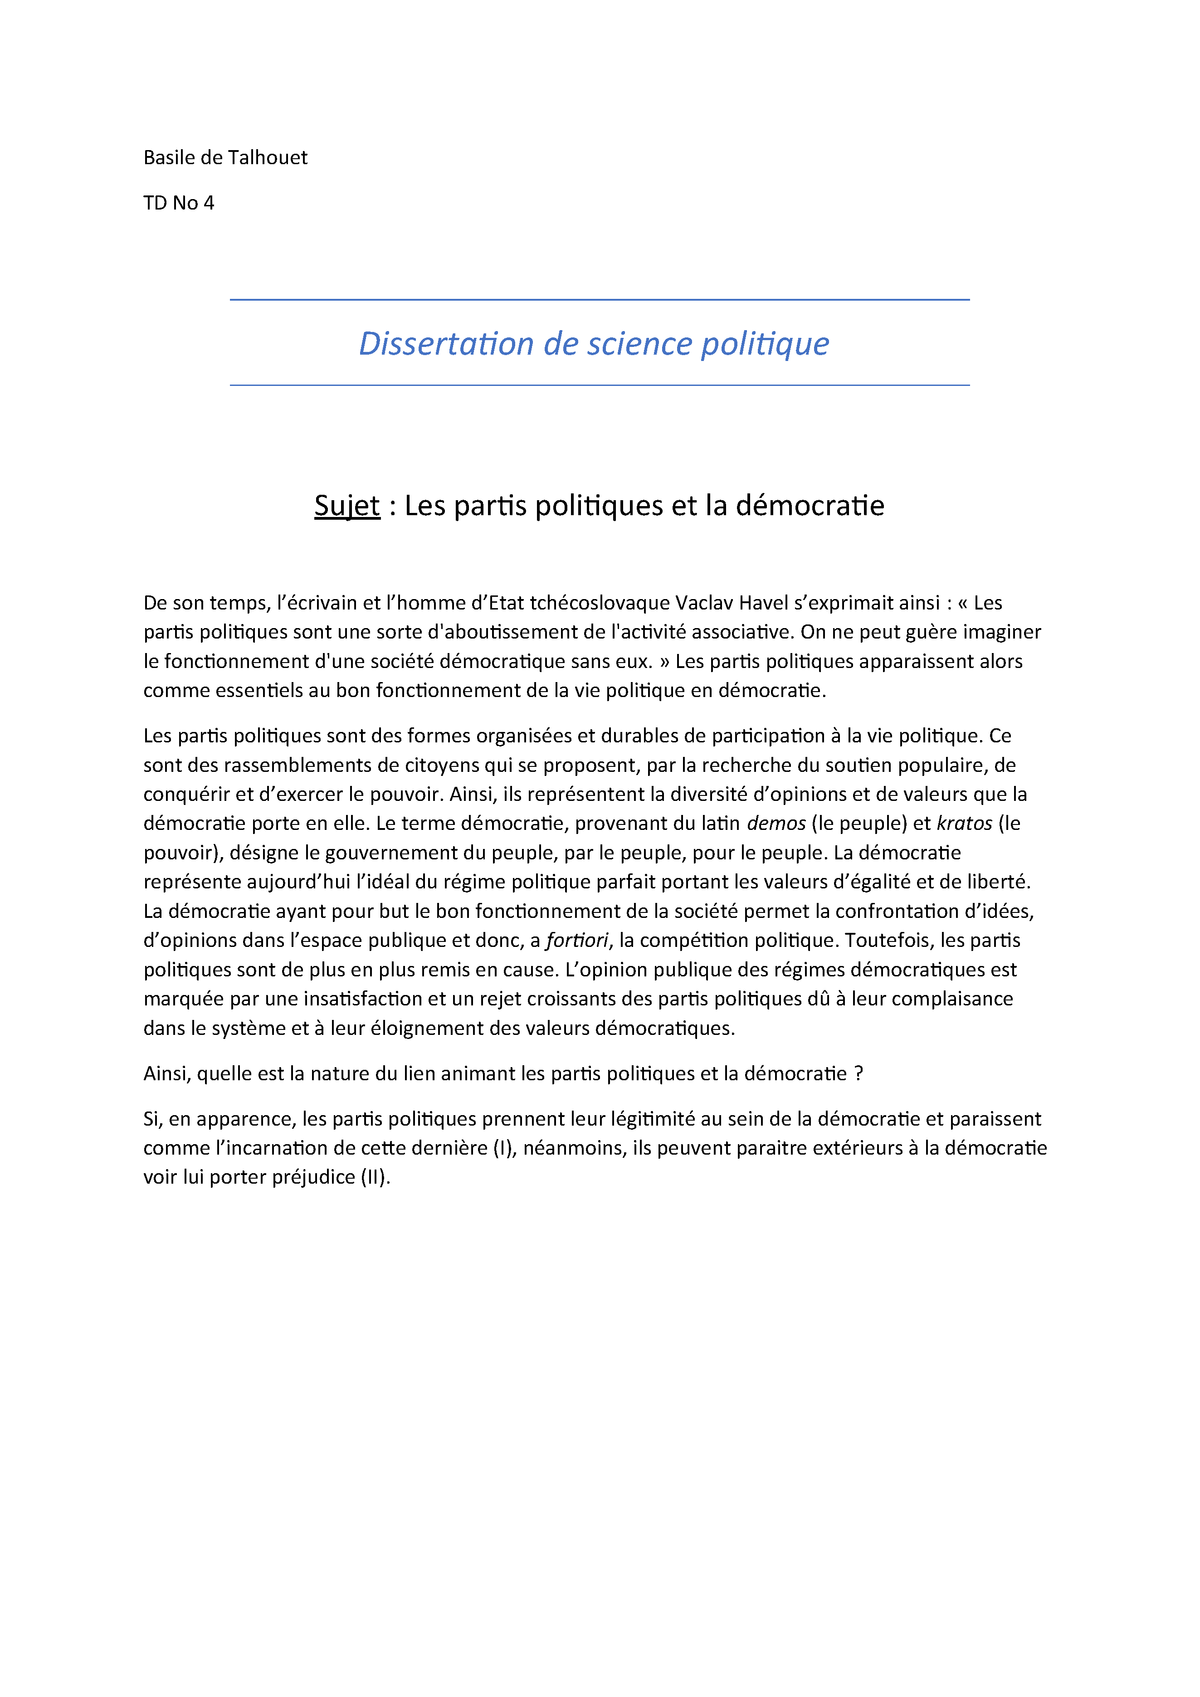 dissertation science politique exemple pdf